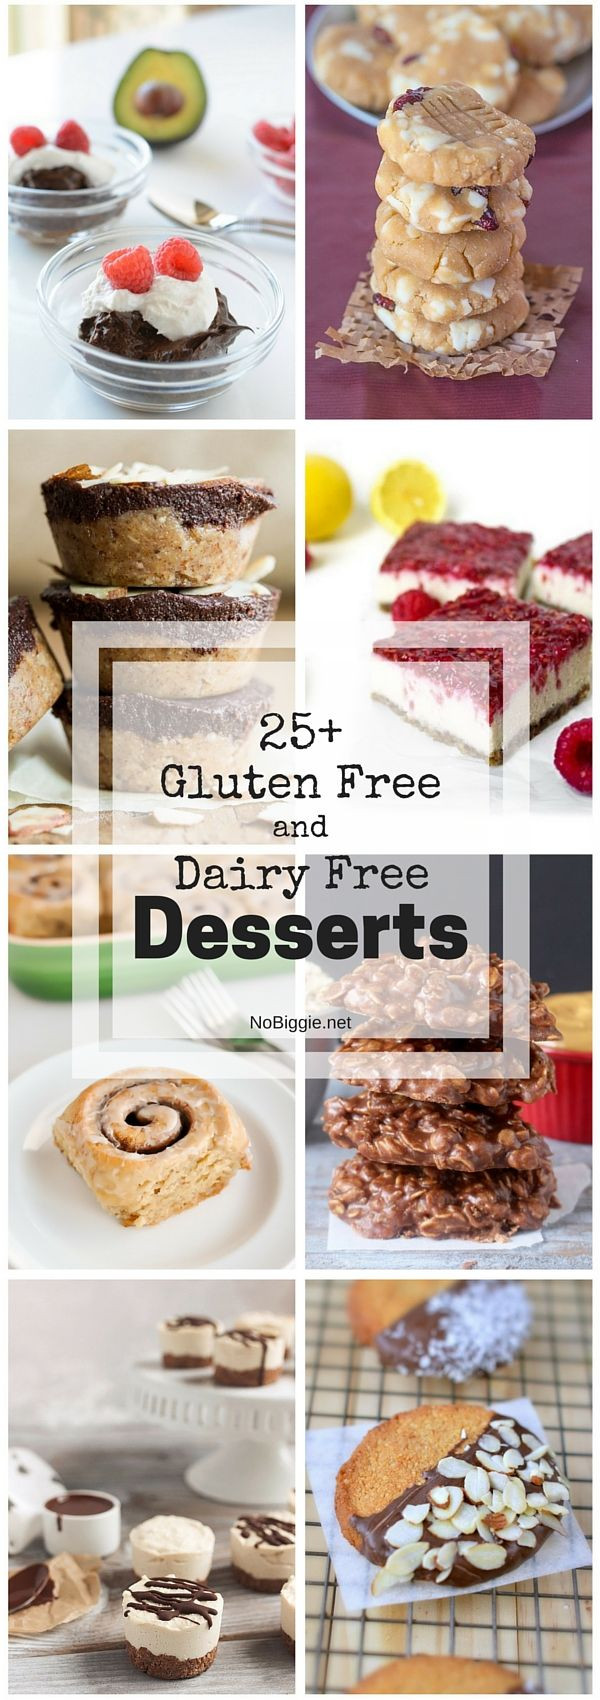 Gluten Free Dairy Free Soy Free Desserts
 17 Best images about Gluten Free Dairy Free Soy Free